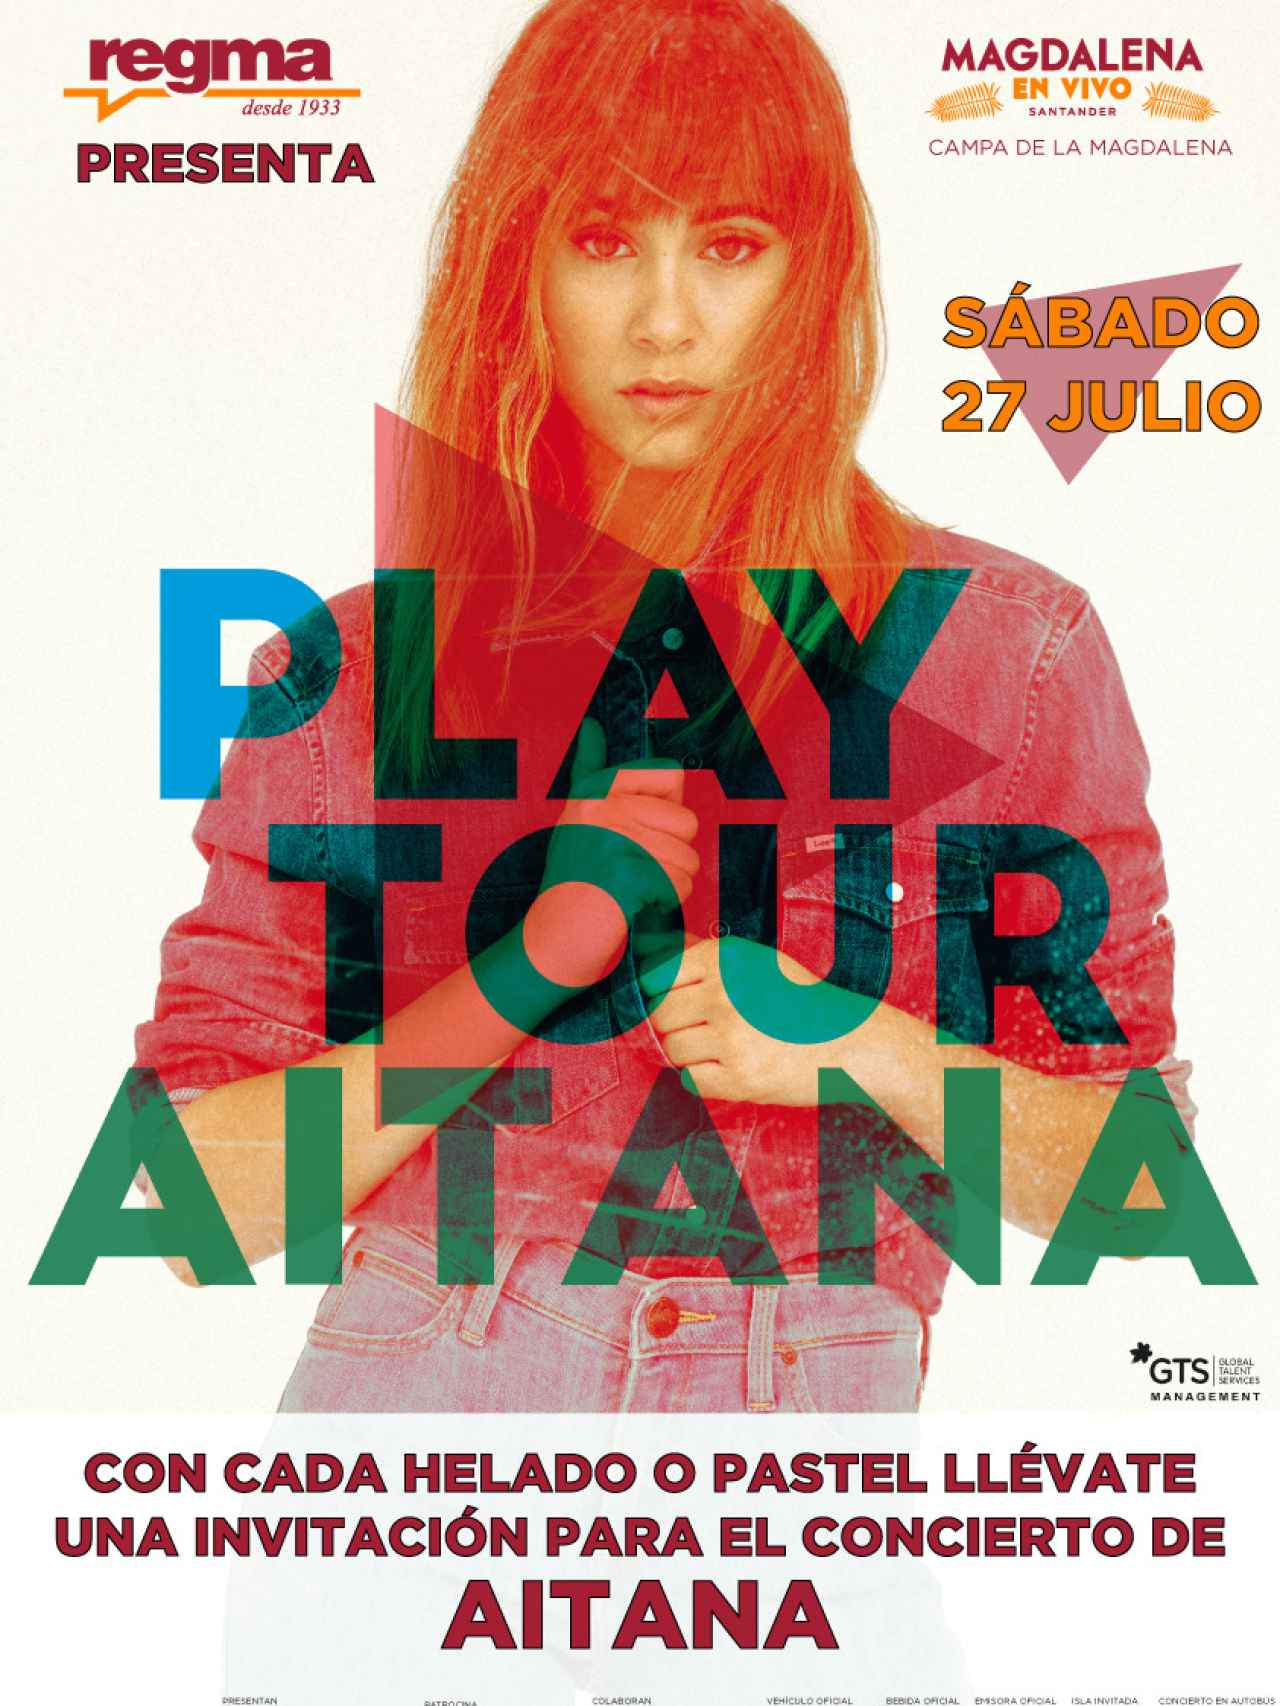 Cartel promocional del concierto de Aitana Ocaña en Santander.